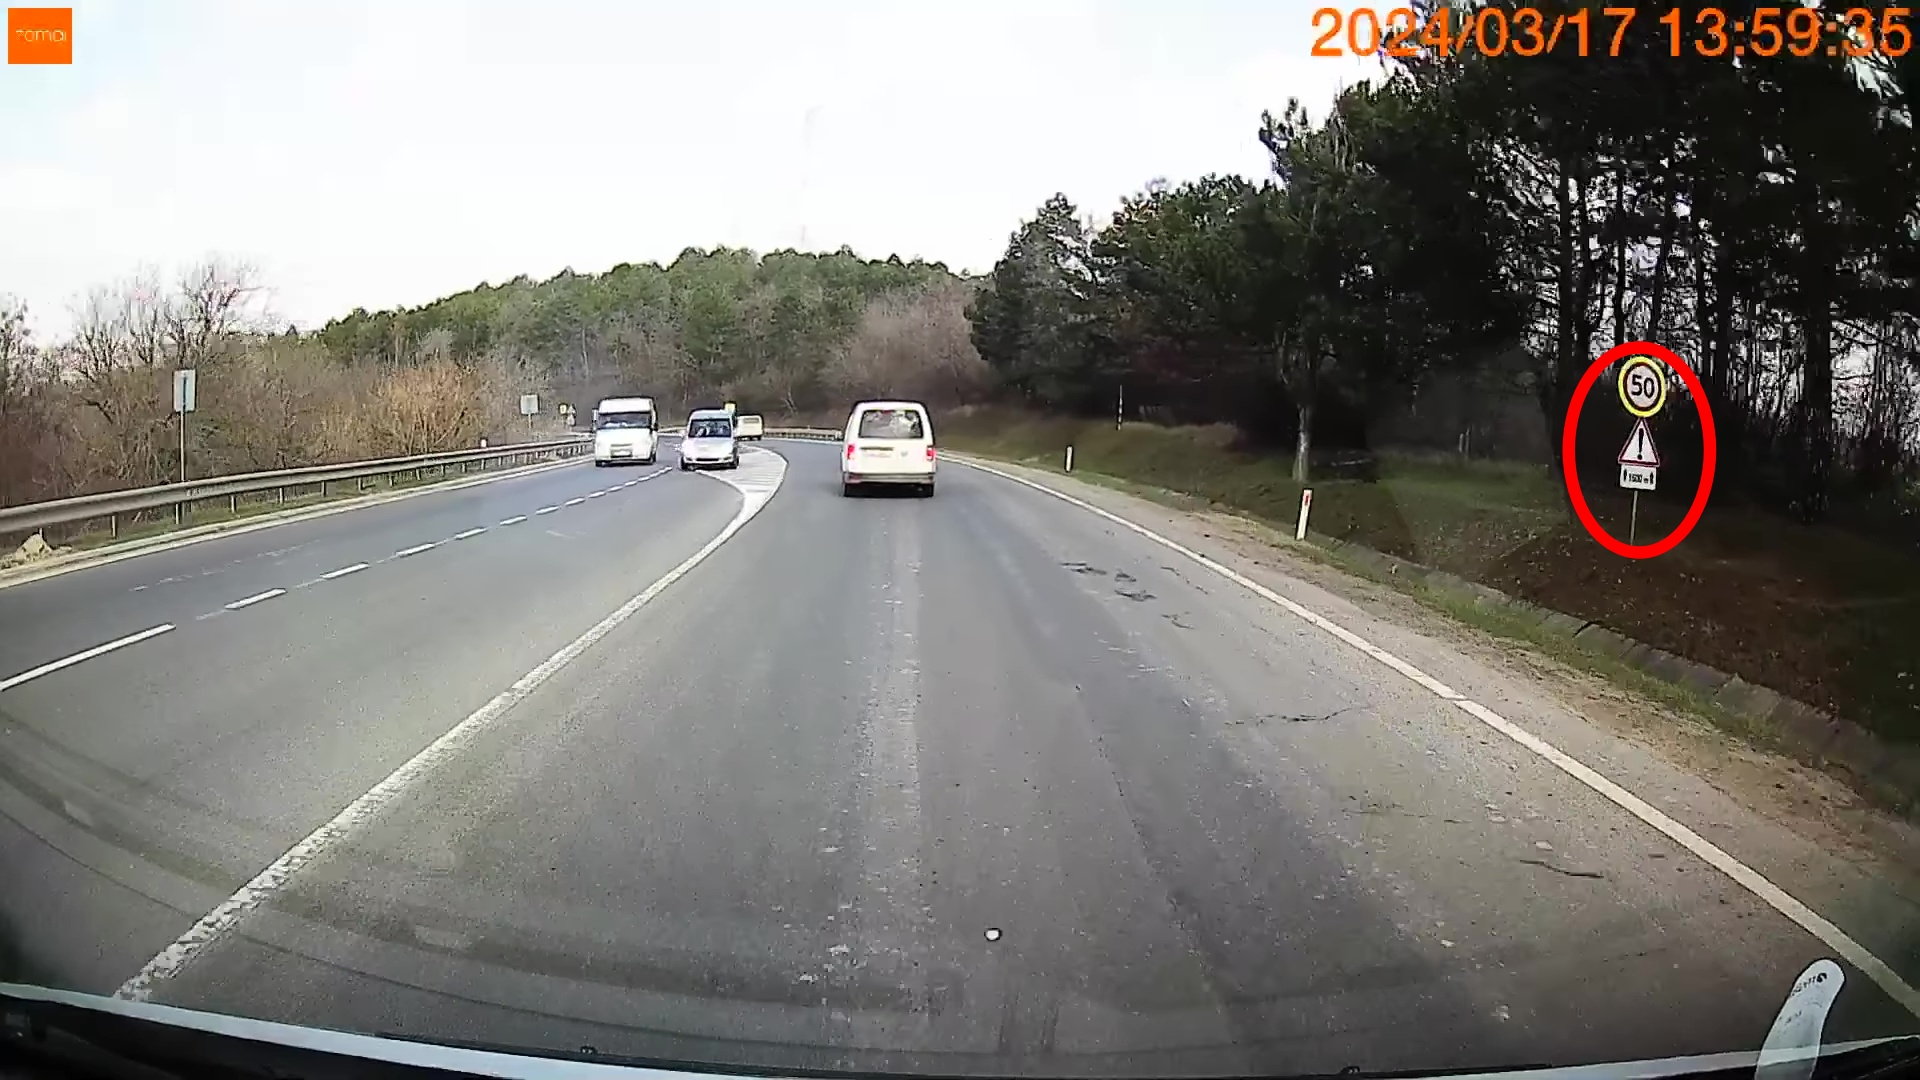 Zonă periculoasă, ignorată de șoferul din Moldova care a generat acest accident